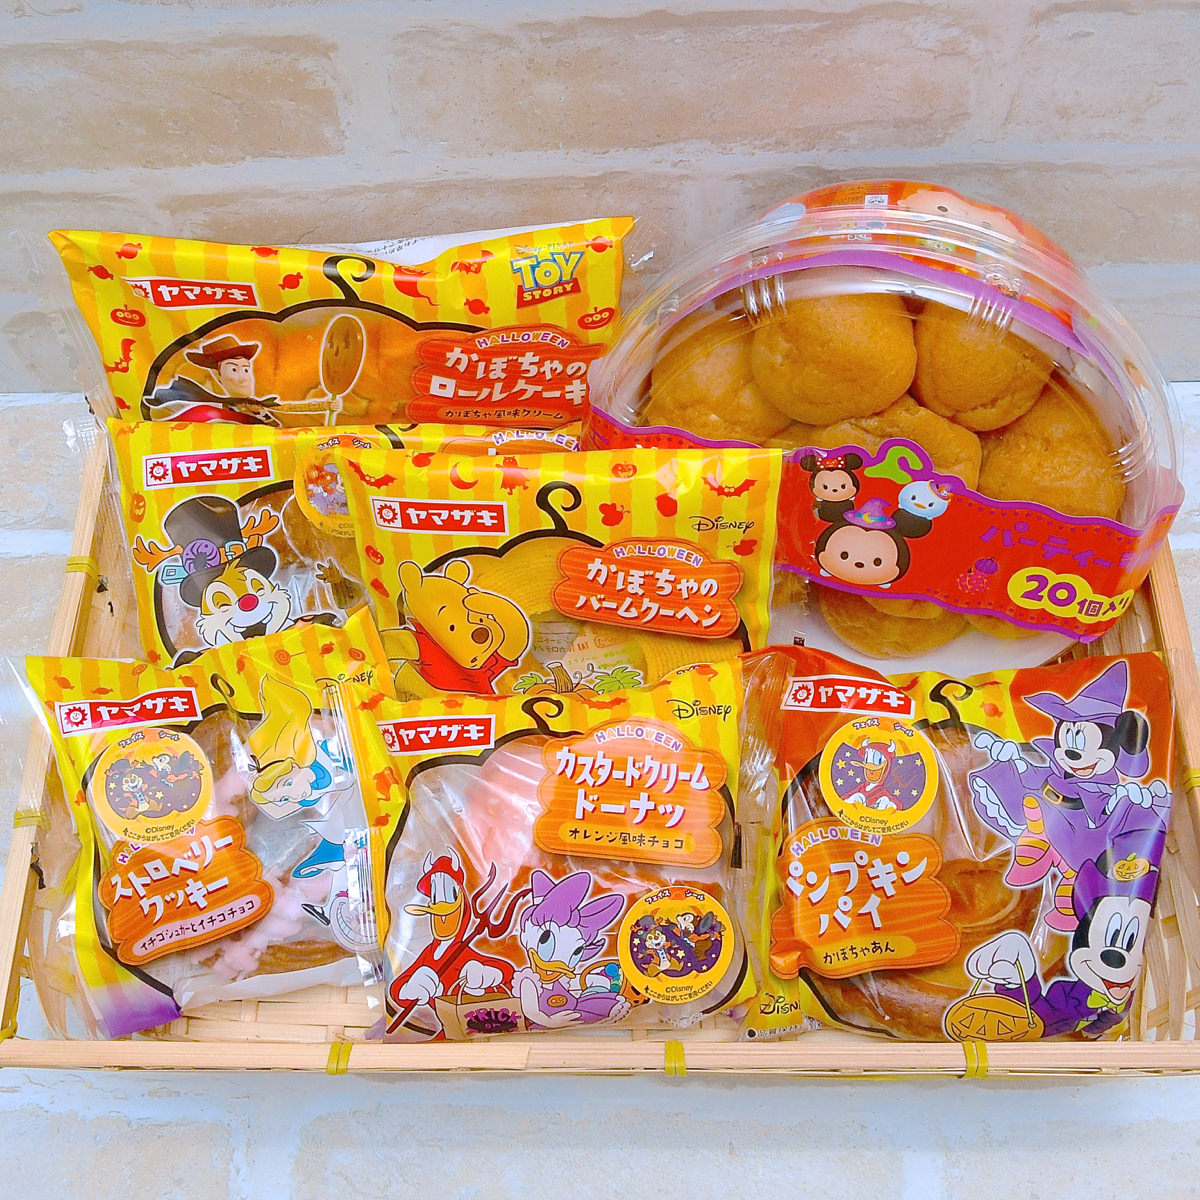 仮装したミッキーたちがかわいい 山崎製パン ヤマザキ ディズニーハロウィンパン17